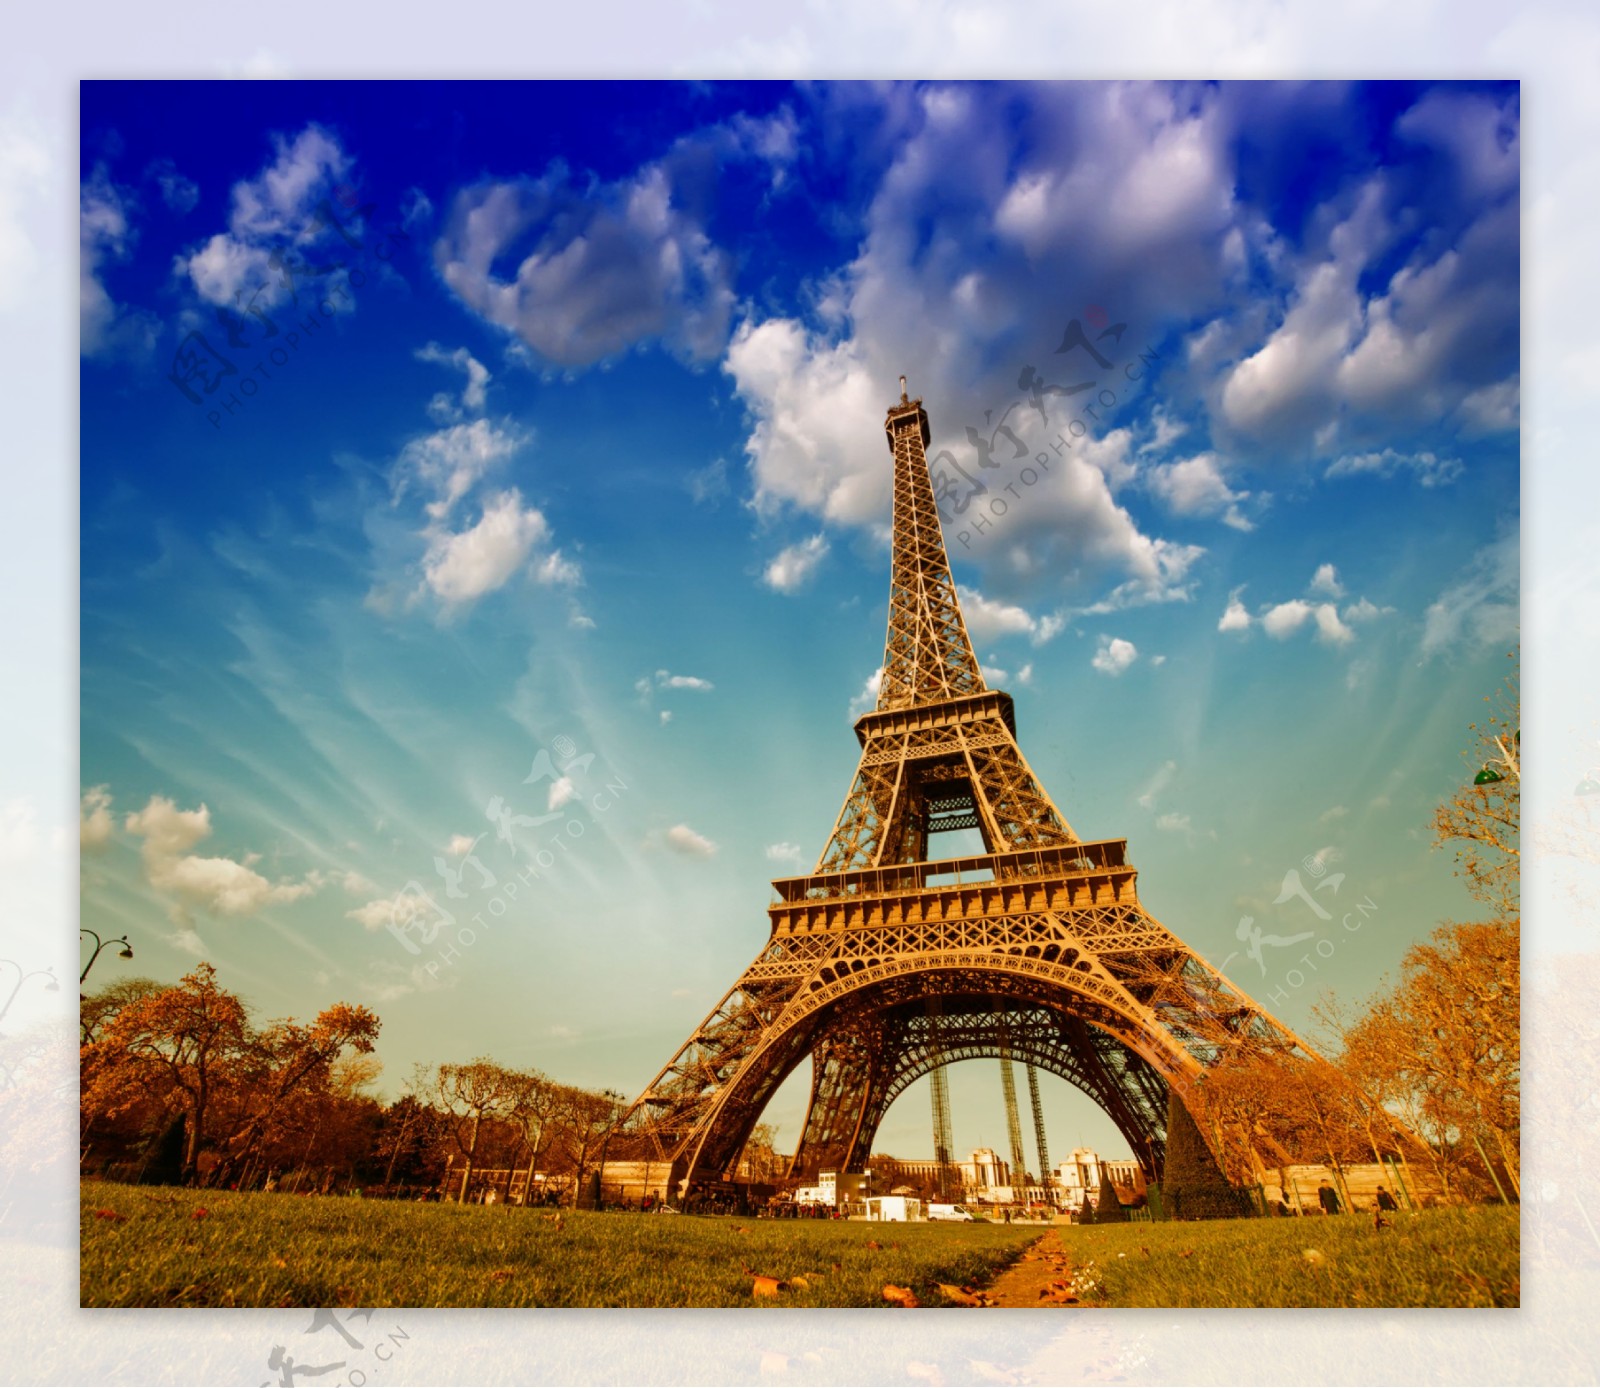 图片素材 : 埃菲尔铁塔, 巴黎, 黄昏, 晚间, 地标, 钟楼, 晚上, 灯, 尖塔, 尖顶, 夜图片 2066x2781 ...